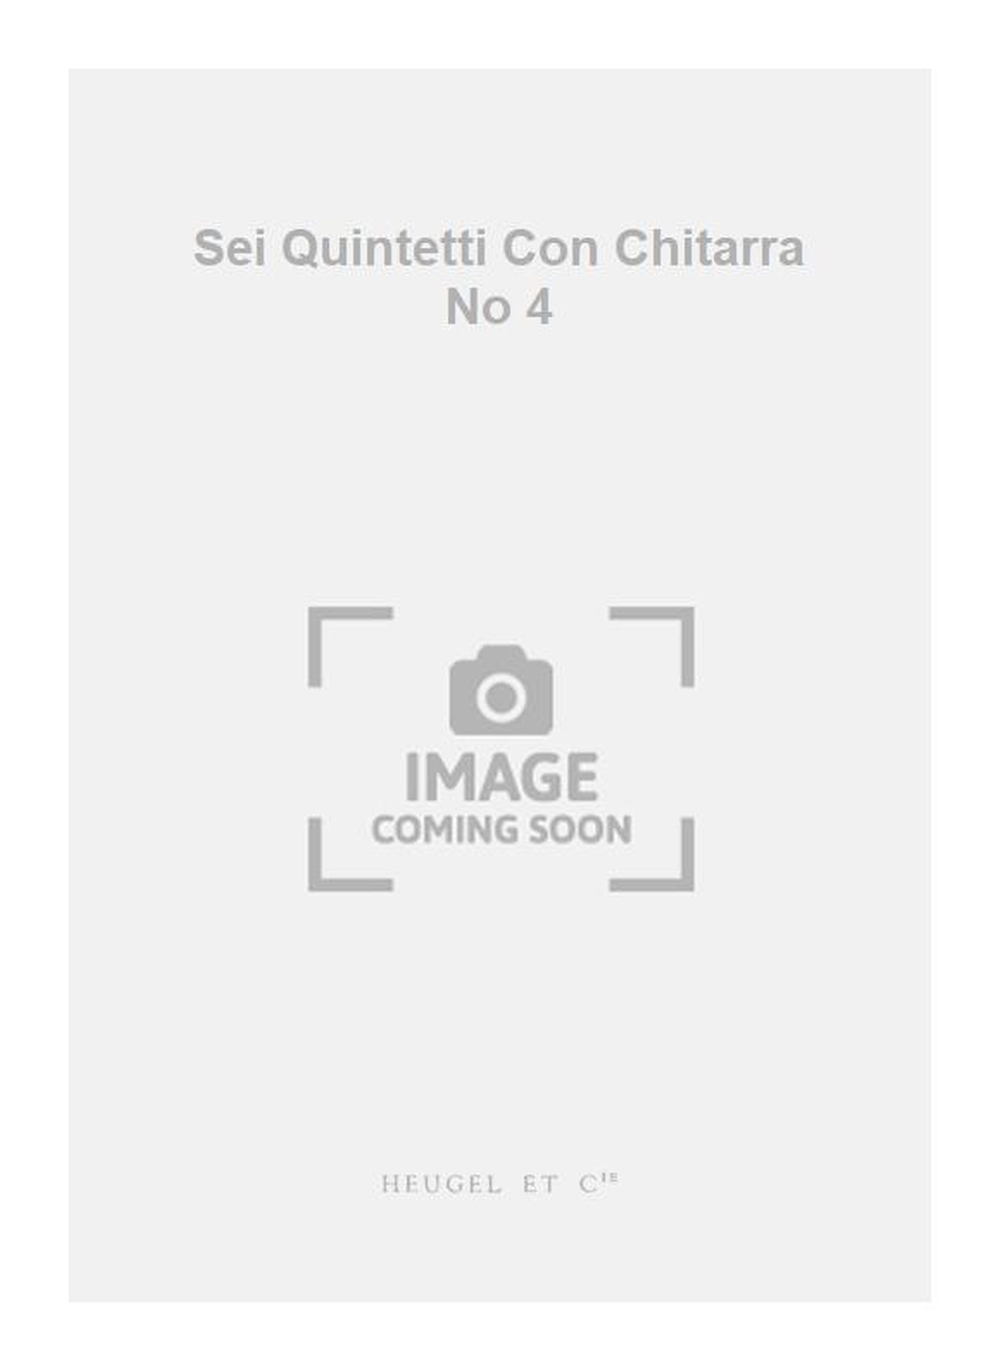 Luigi Boccherini: Sei Quintetti Con Chitarra No 4